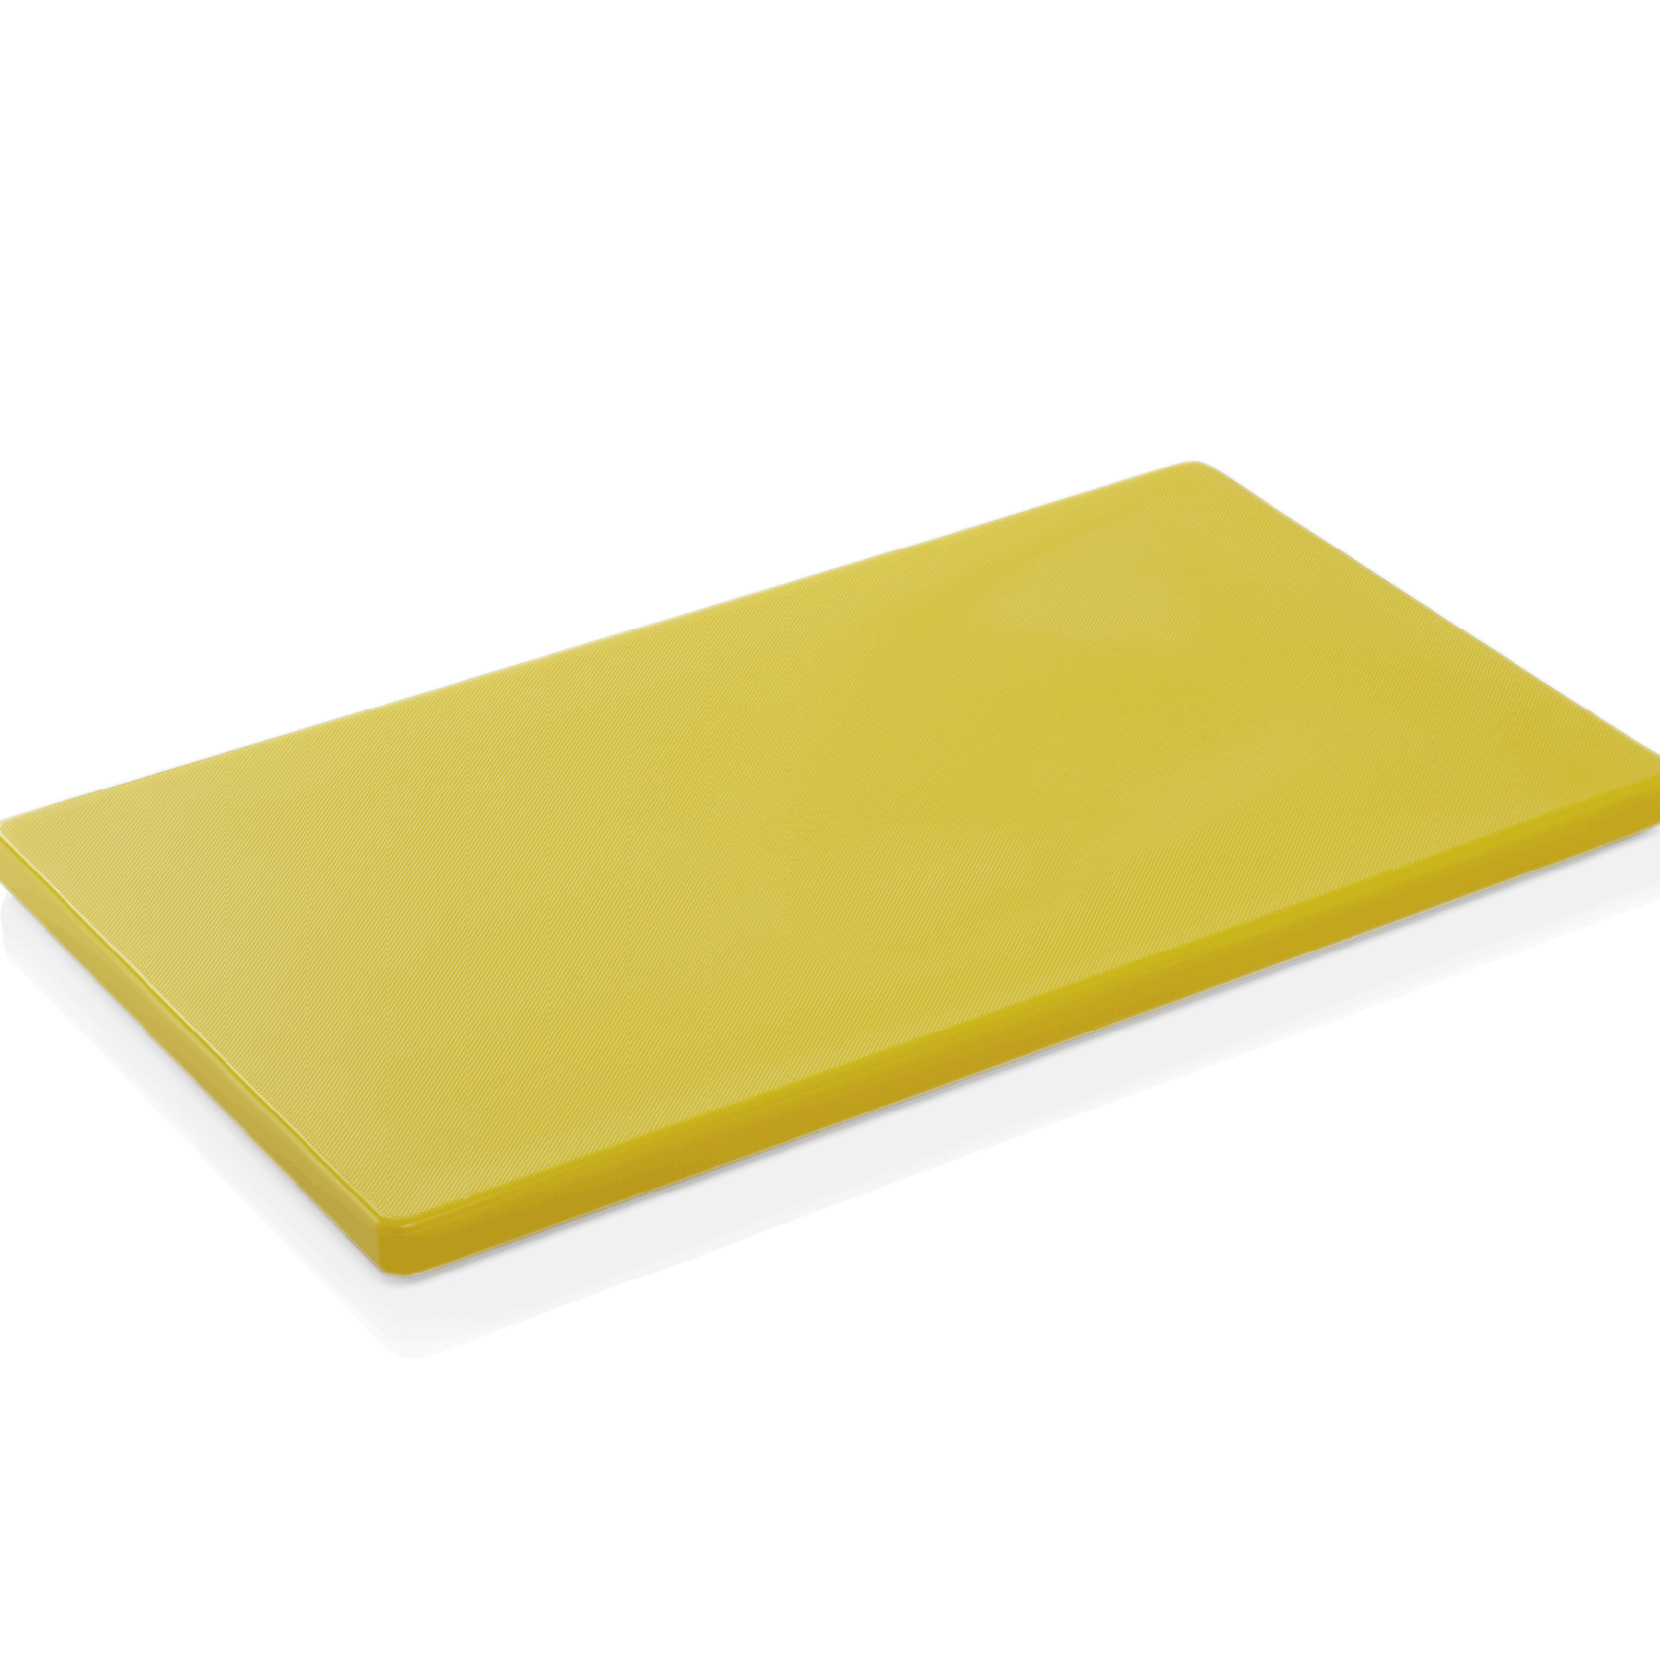 Schneidbrett HACCP, 60 x 40 x 2 cm, gelb, Polyethylen